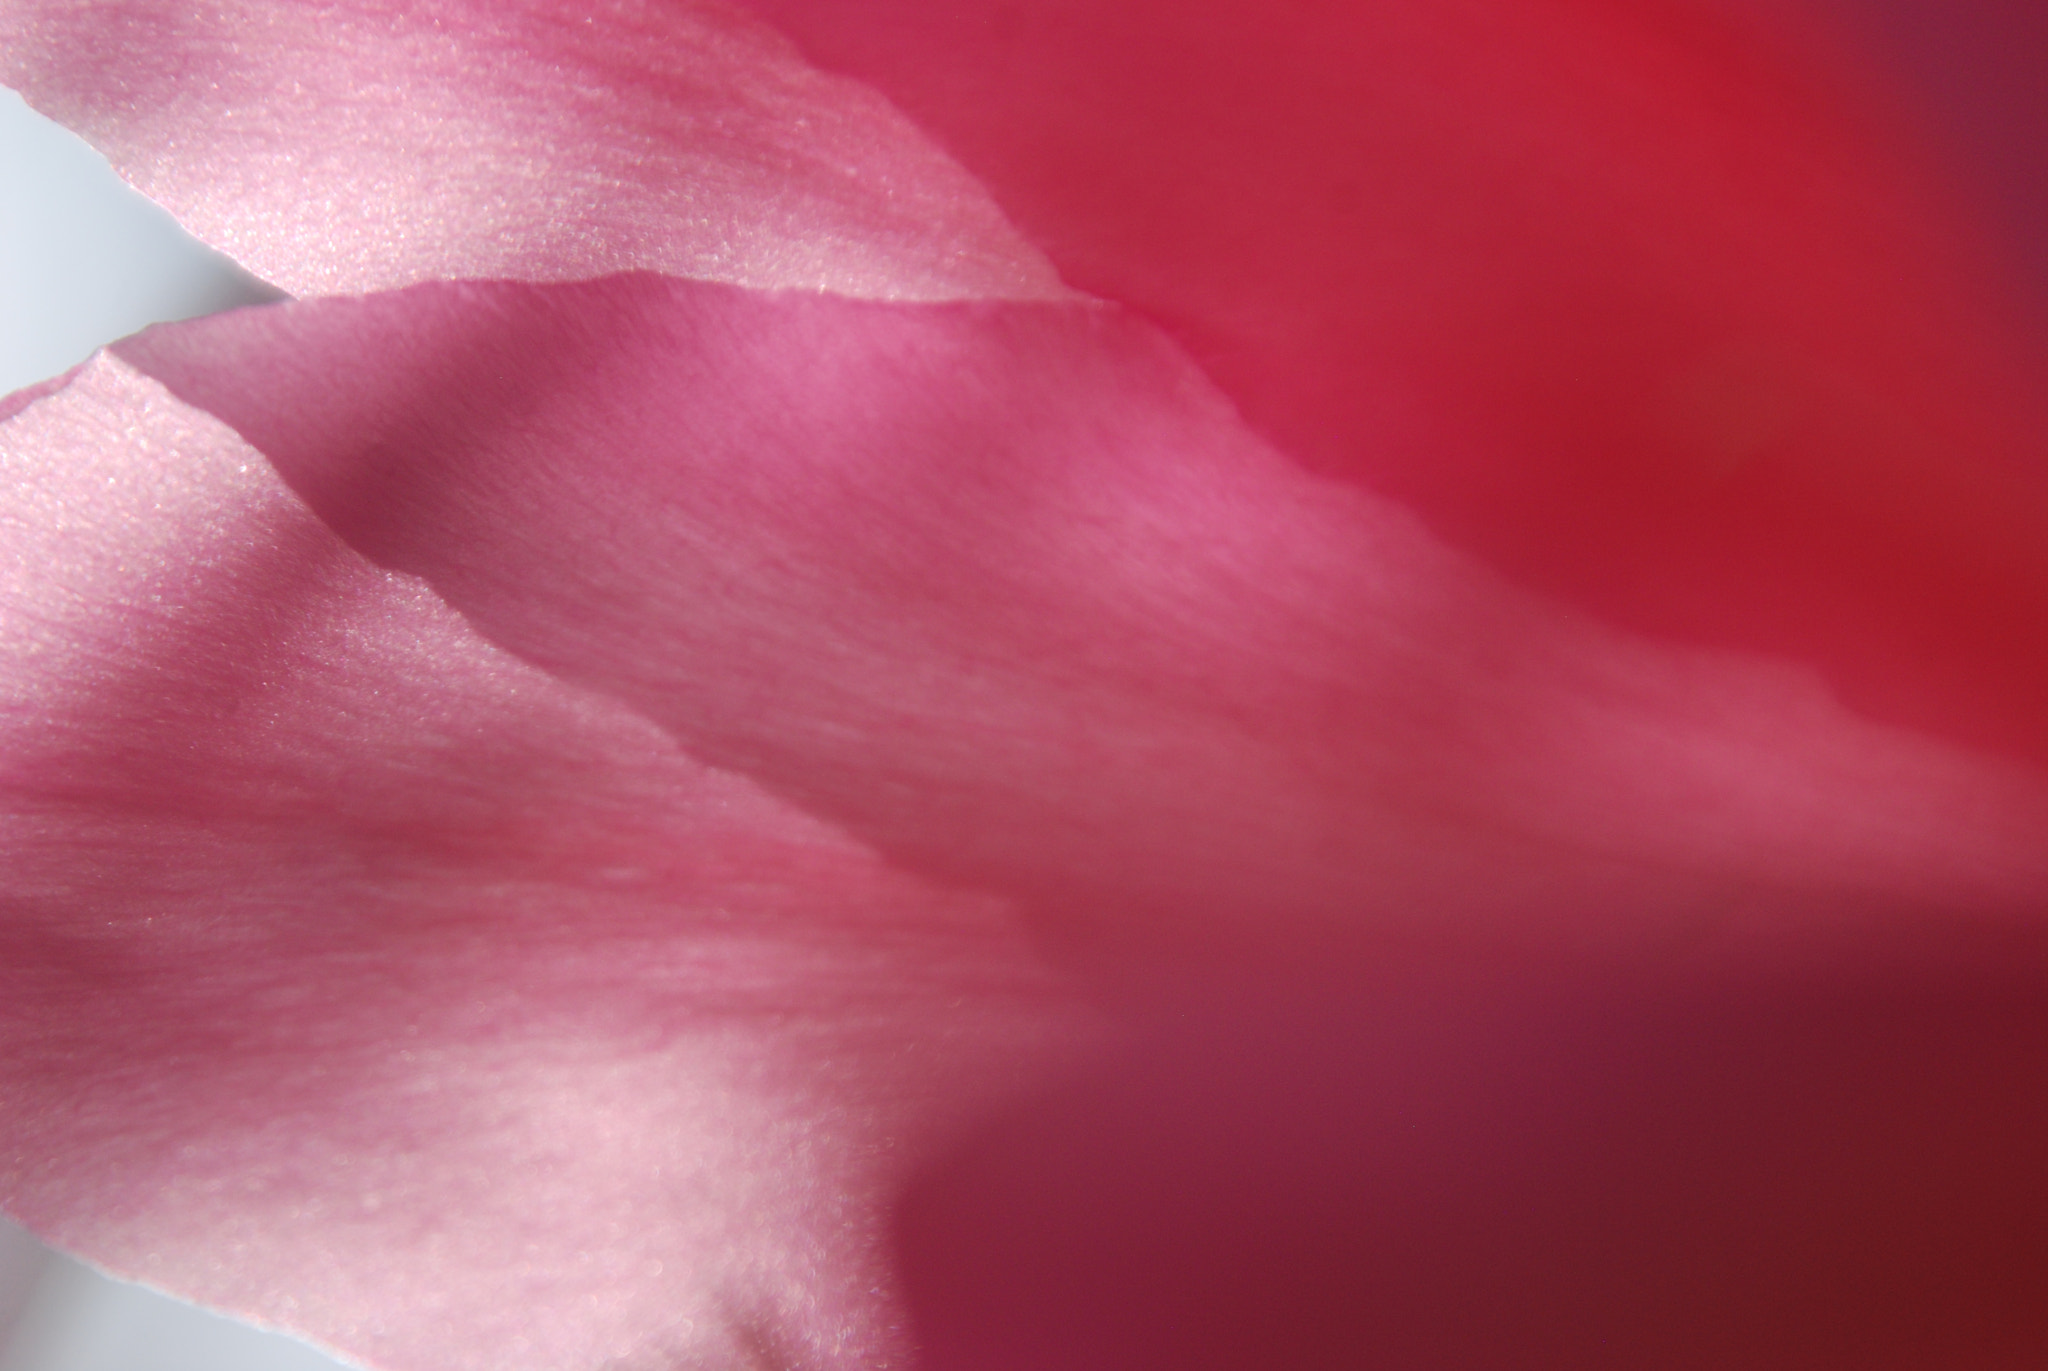 Nikon D80 + Tamron AF 28-300mm F3.5-6.3 XR Di LD Aspherical (IF) Macro sample photo. Pink petals, 2018 photography